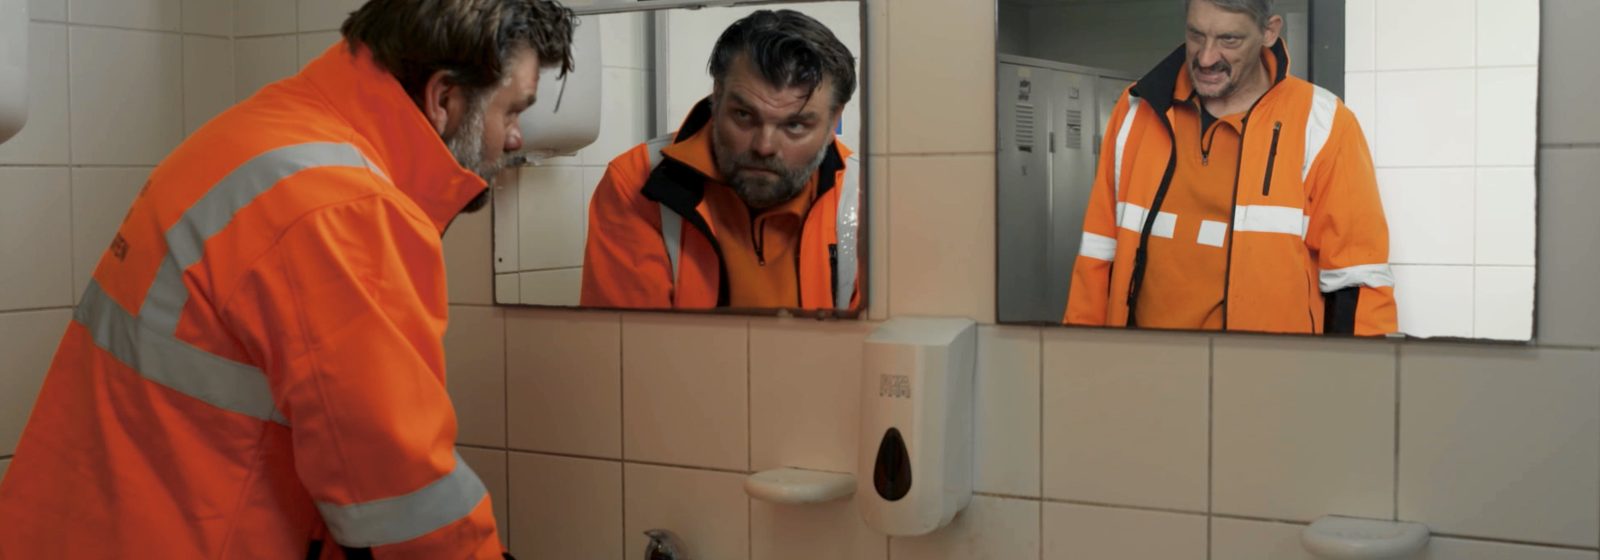 Acteurs Stefan Degand en Peter Van den Begin als dokwerkers in 'Zwanst na nie!'